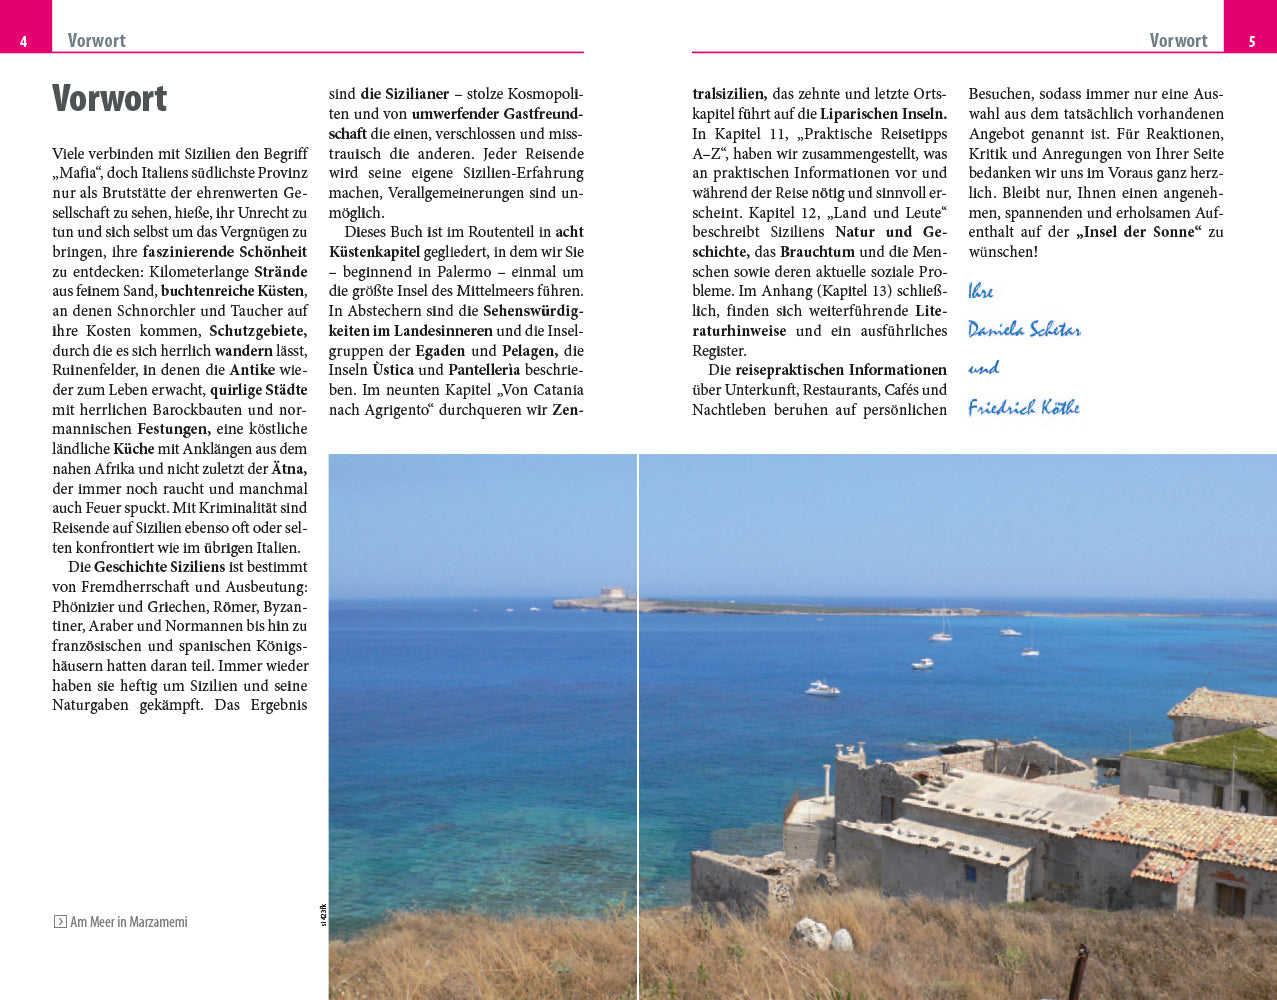 Sizilien, Egadische, Pelagische und Liparische Inseln - Reise Know-How